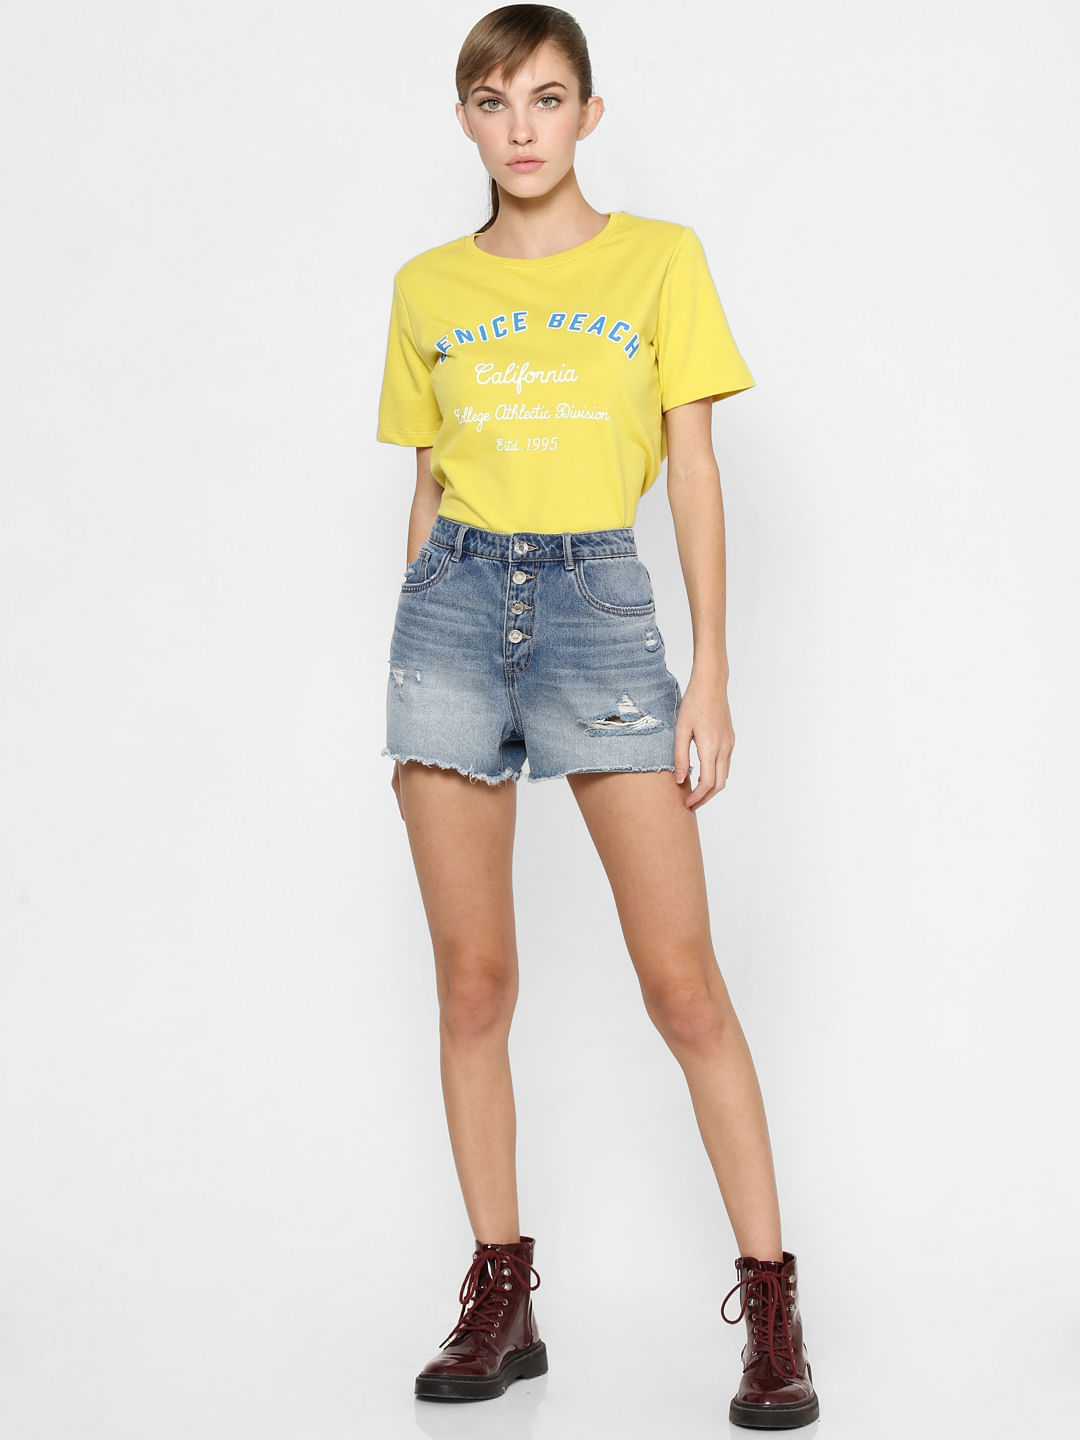 Brown/Yellow S discount 52% WOMEN FASHION Shirts & T-shirts Shirt Print Ines Shirt 